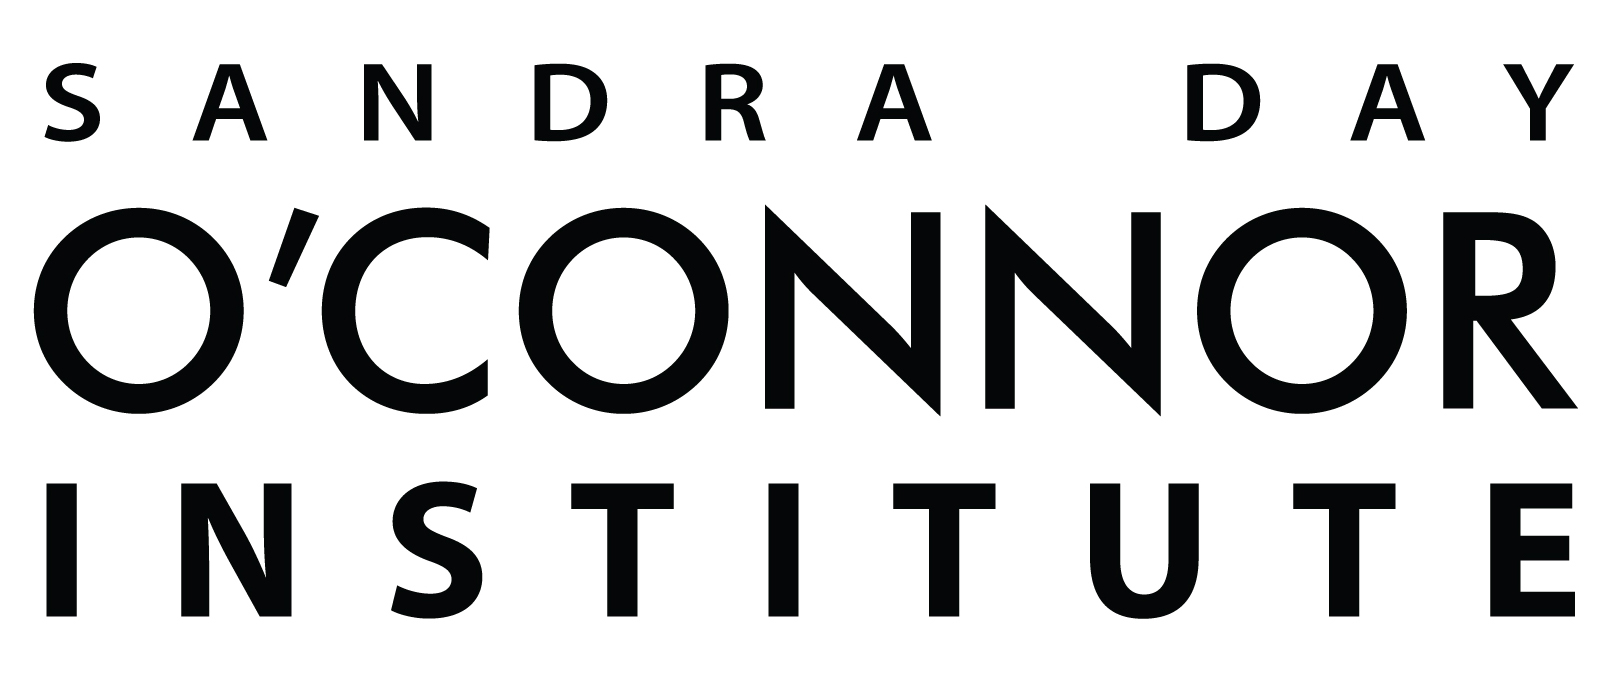 Sandra Day O'Connor Institute